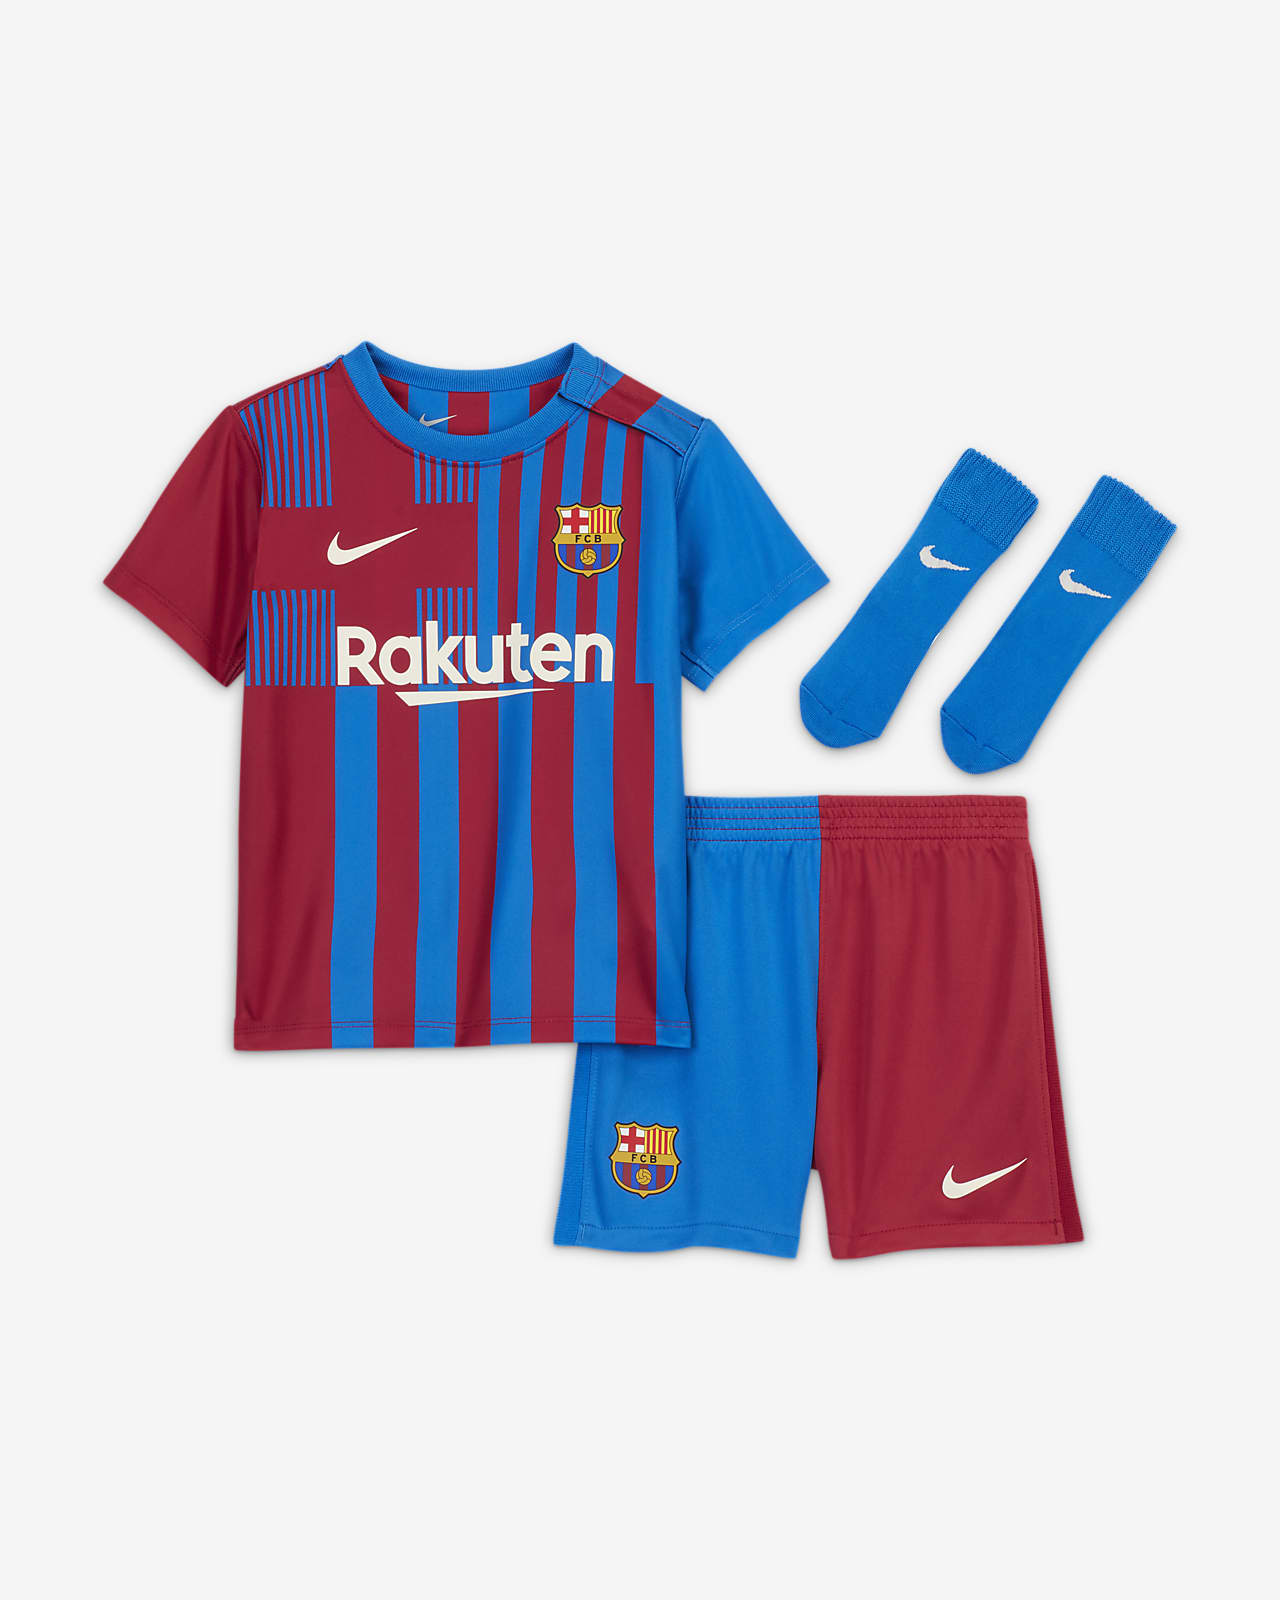 Fc Barcelona Kit 2021/22 / F C Barcelona 2021 22 Stadium Away Men S ...